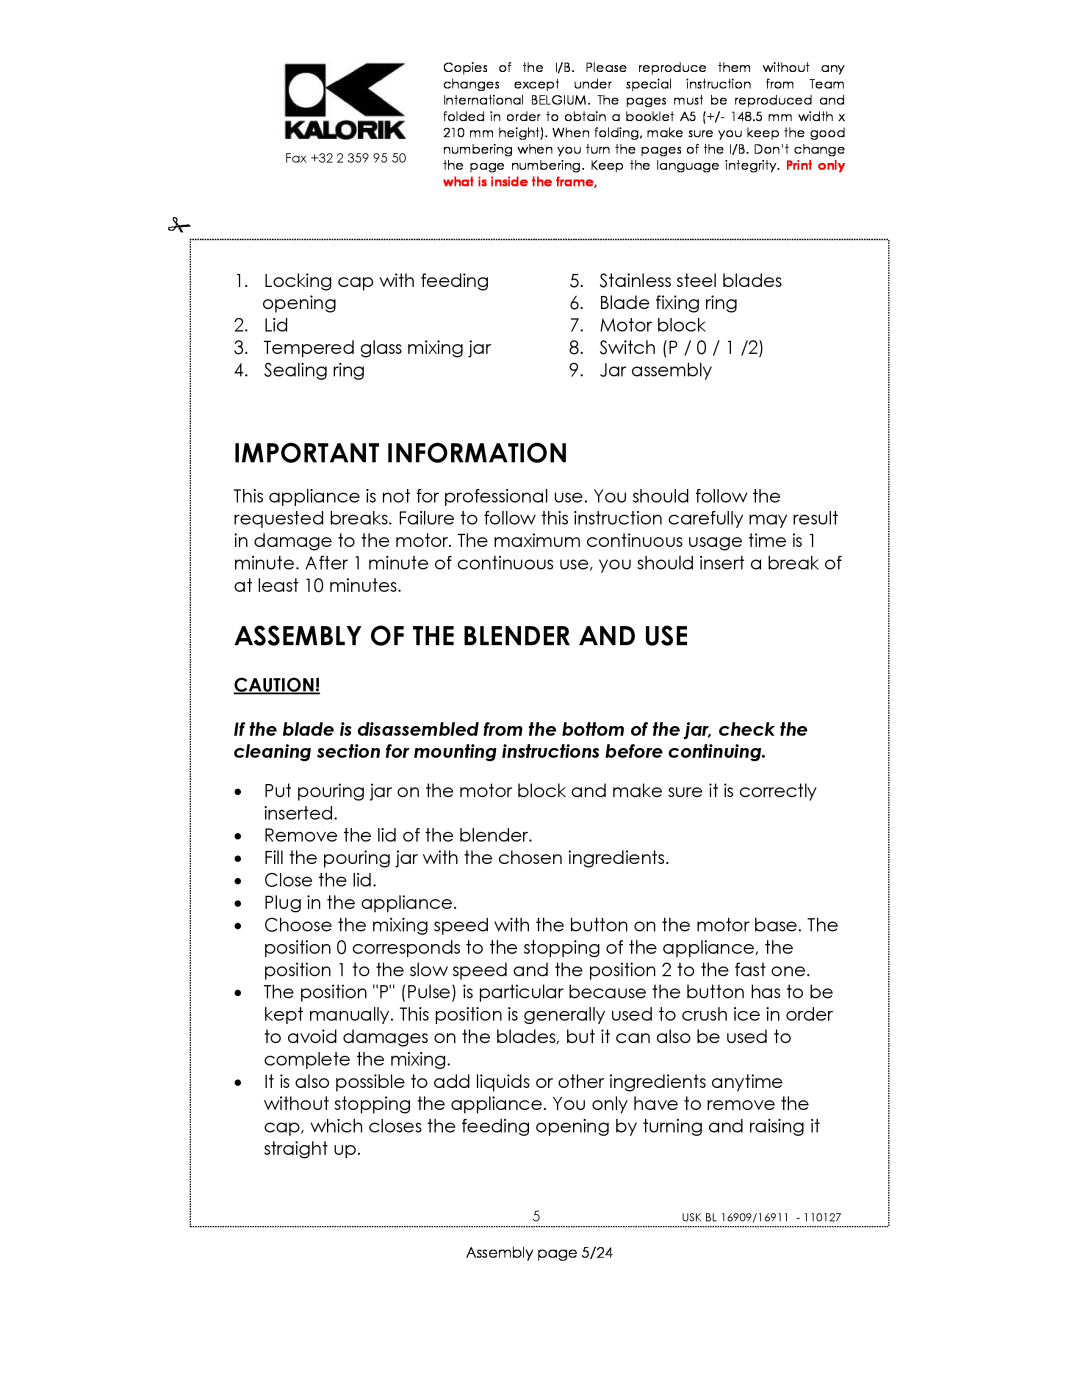 Kalorik USK BL 33029, usk bl 16909, USK BL 16911 manual Important Information, Assembly Of The Blender And Use 